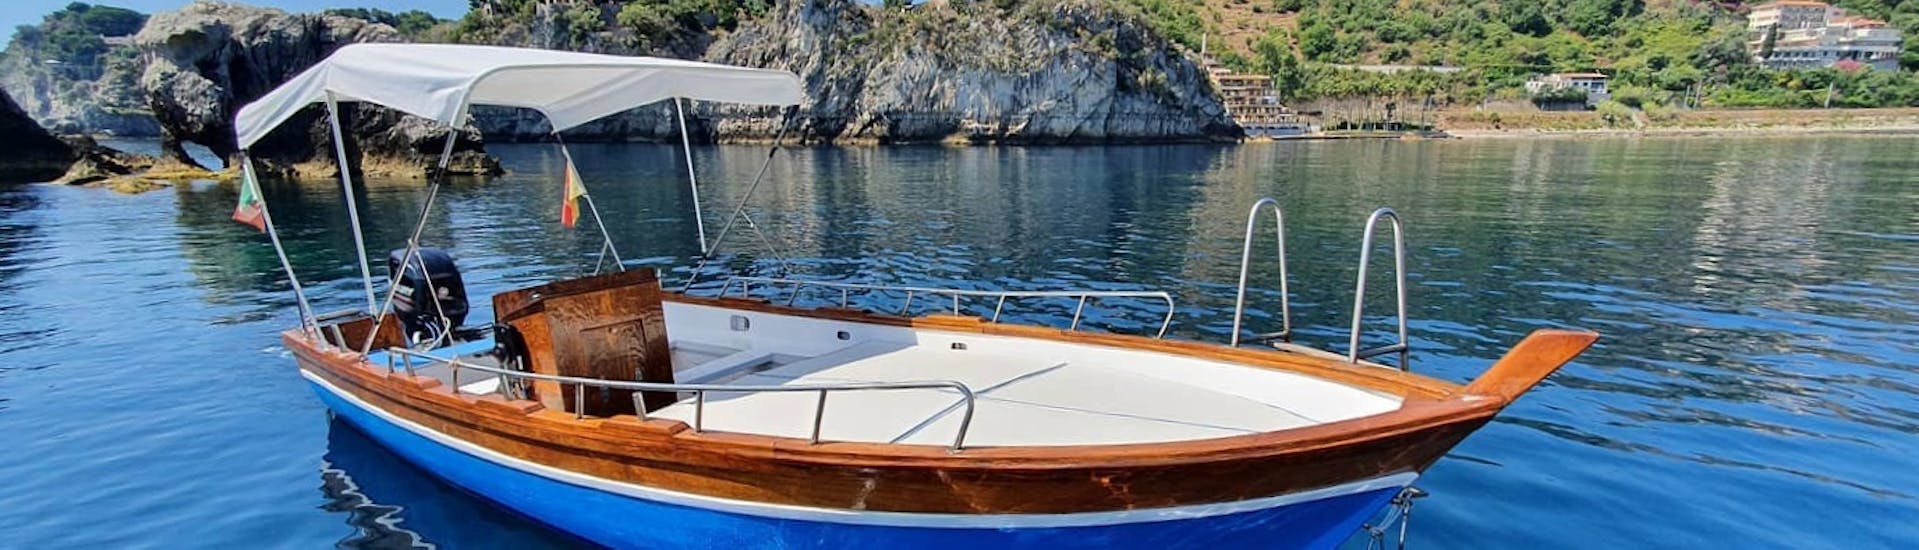 Foto del barco utilizado para el paseo desde Taormina, con cata de vinos, con Boat Experience Taormina.